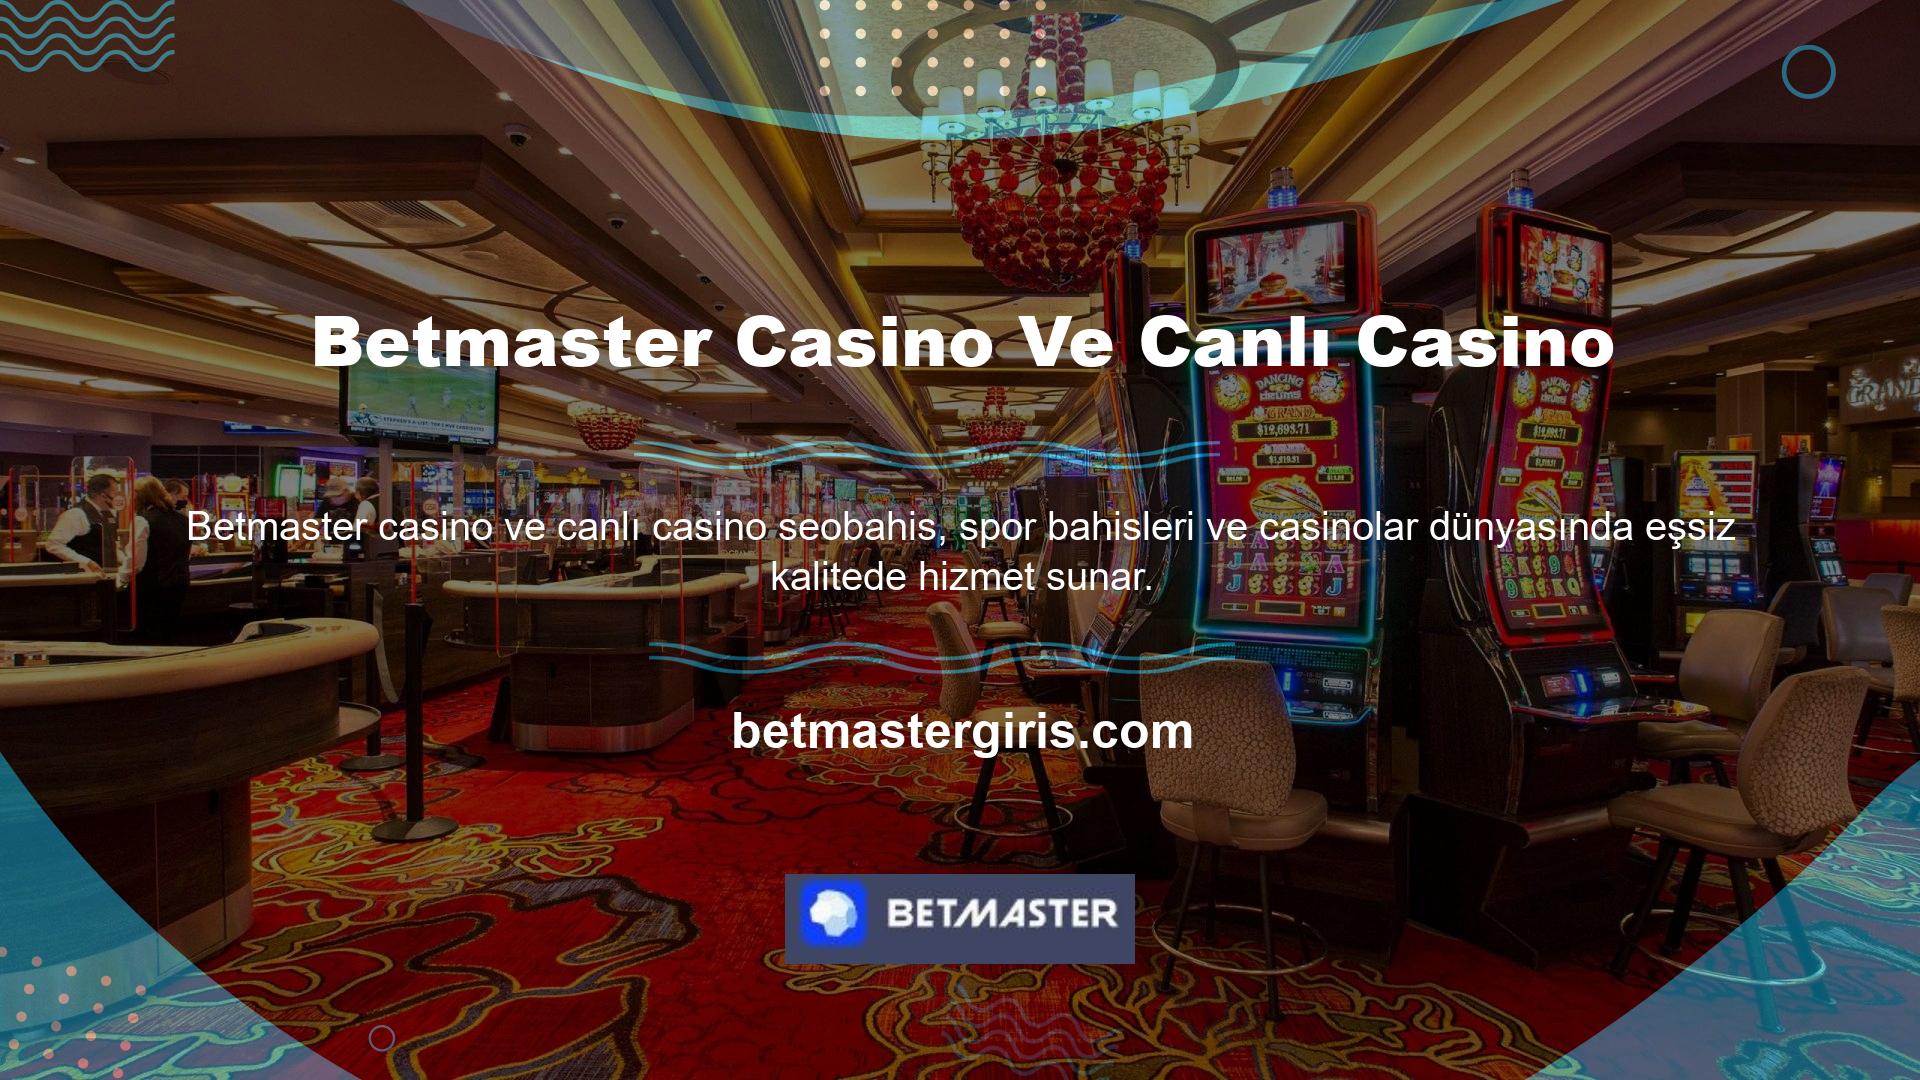 Betmaster, özel casino oyunları, canlı casino, blackjack ve rulet dahil olmak üzere çevrimiçi oyun standartlarını aşan bir casino ortamı sunar